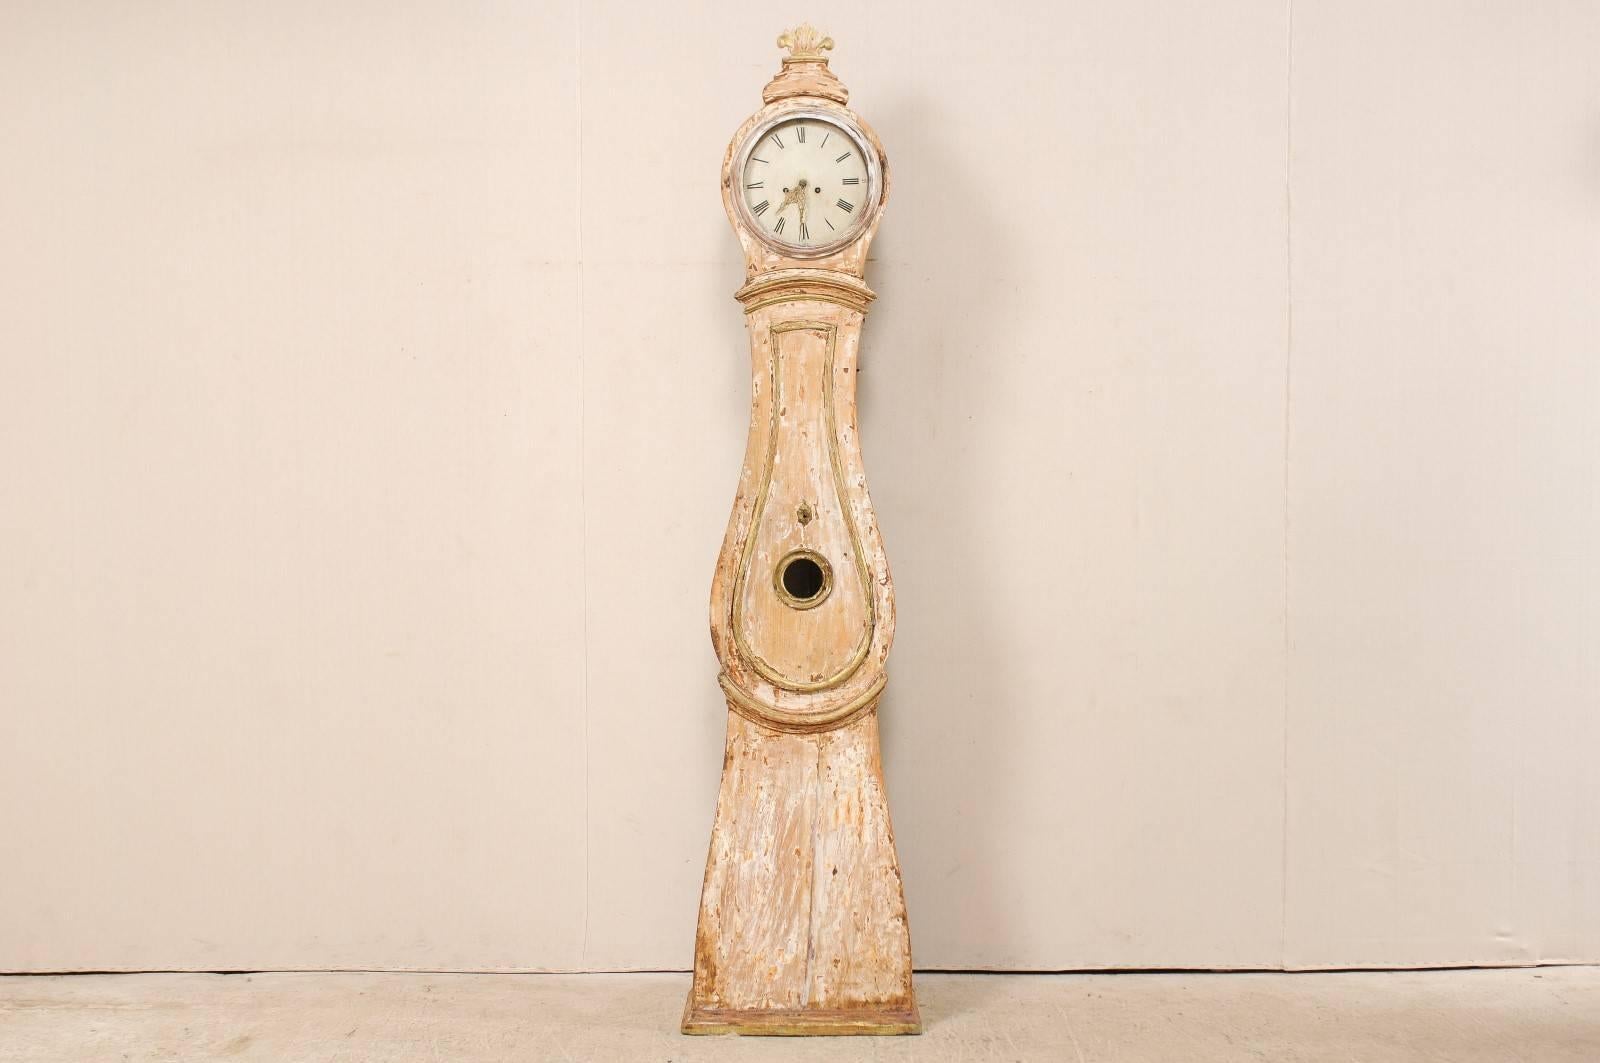 Une horloge grand-père suédoise en bois sculpté du 19ème siècle. Cette grande horloge ancienne du nord de la Suède présente une feuille en éventail empilée et surélevée à son sommet, et accentuée par des moulures autour du cou et de la taille. La